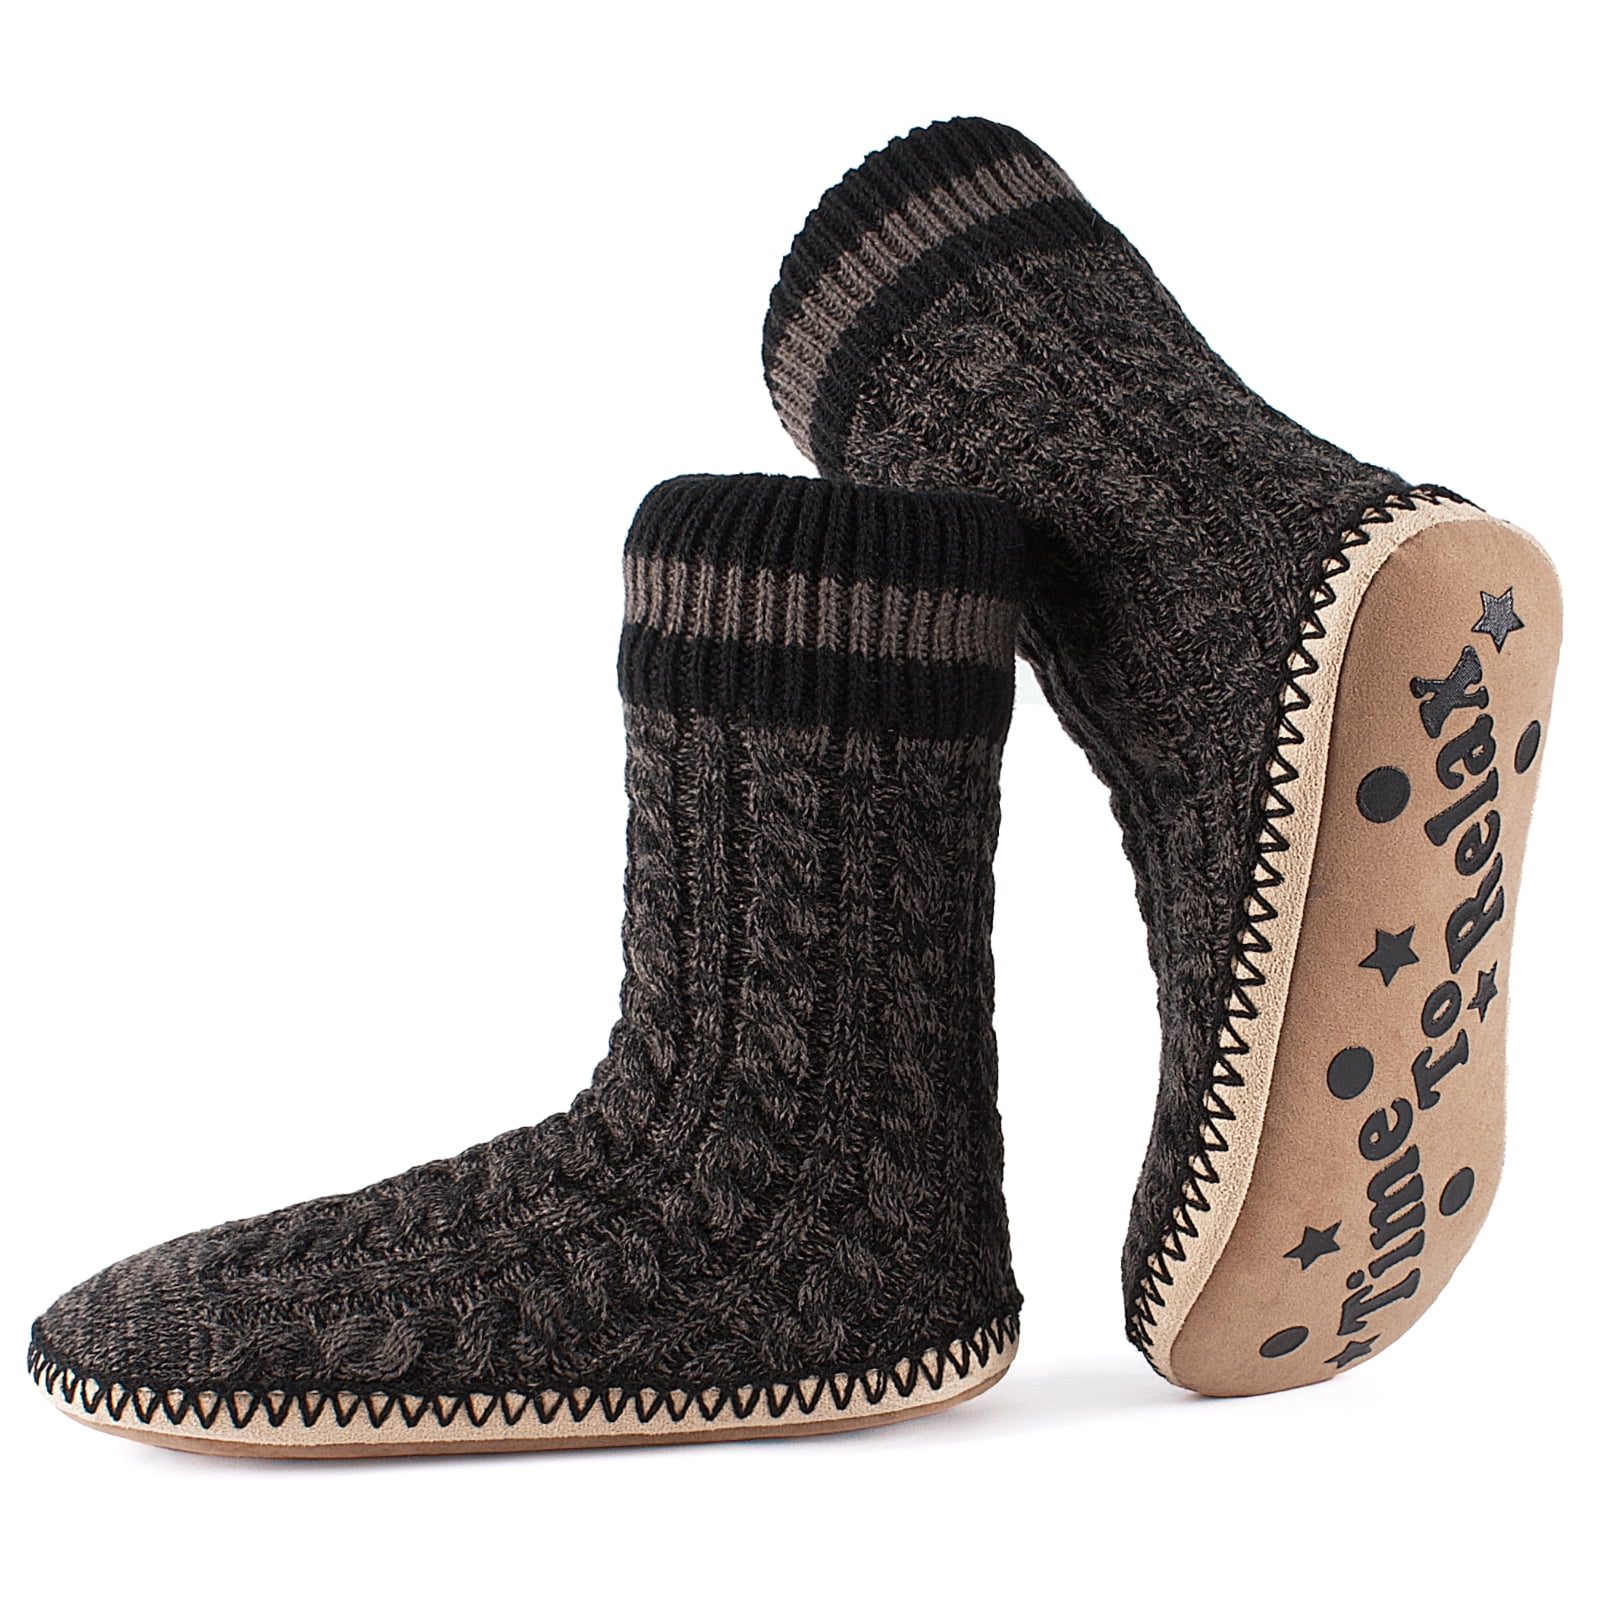  DoSmart Men's Winter Thermal Fleece Lining Knit Slipper Socks  Christmas Non Slip Socks(Black) : Clothing, Shoes & Jewelry